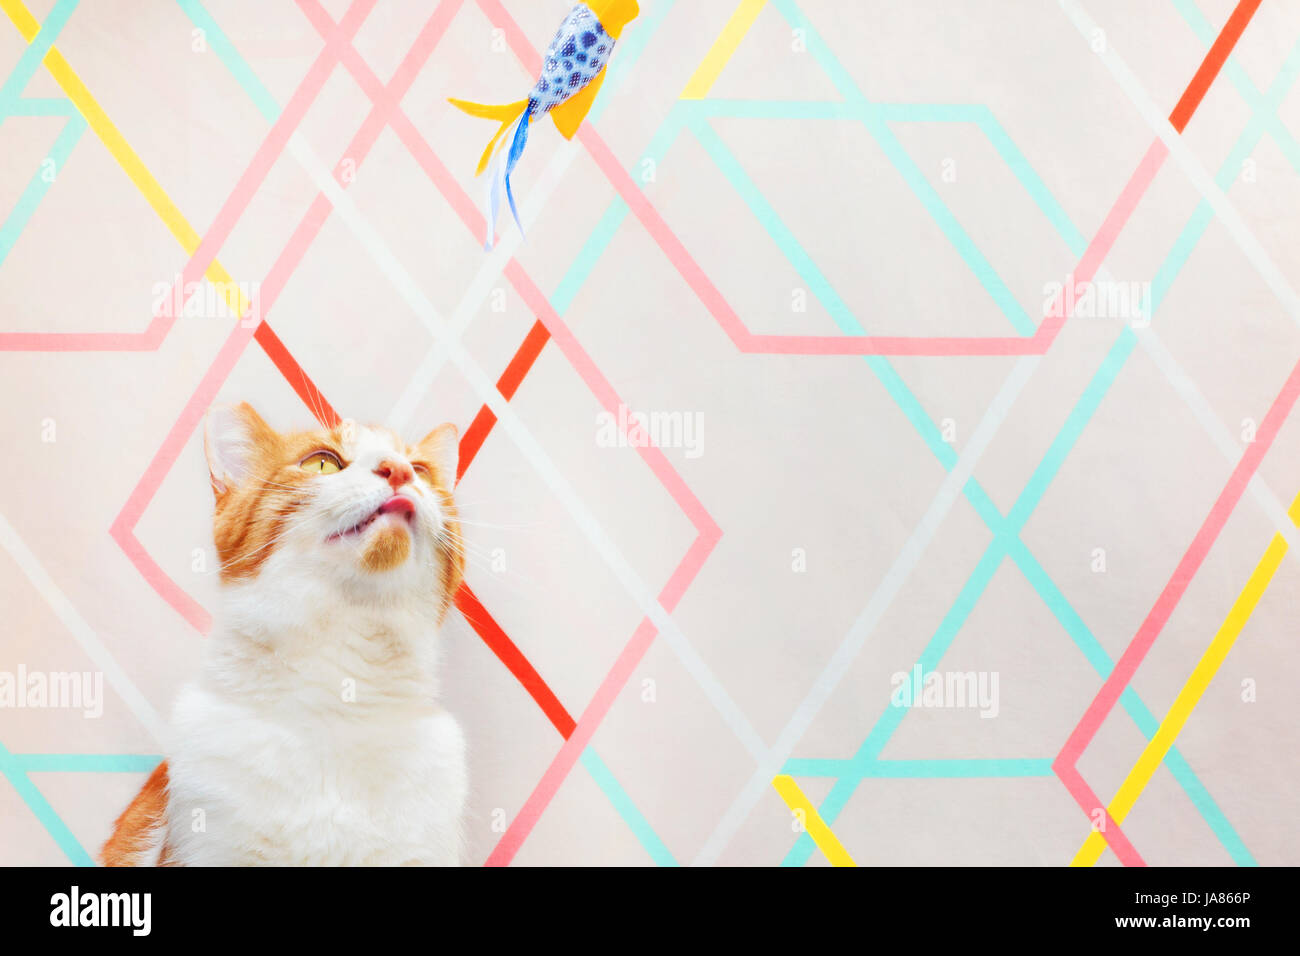 Fotografía de un color naranja y blanco gato mirando hacia arriba y se centra en un gato sobrecarga de juguete. Moderno, fondo geométrico. Foto de stock